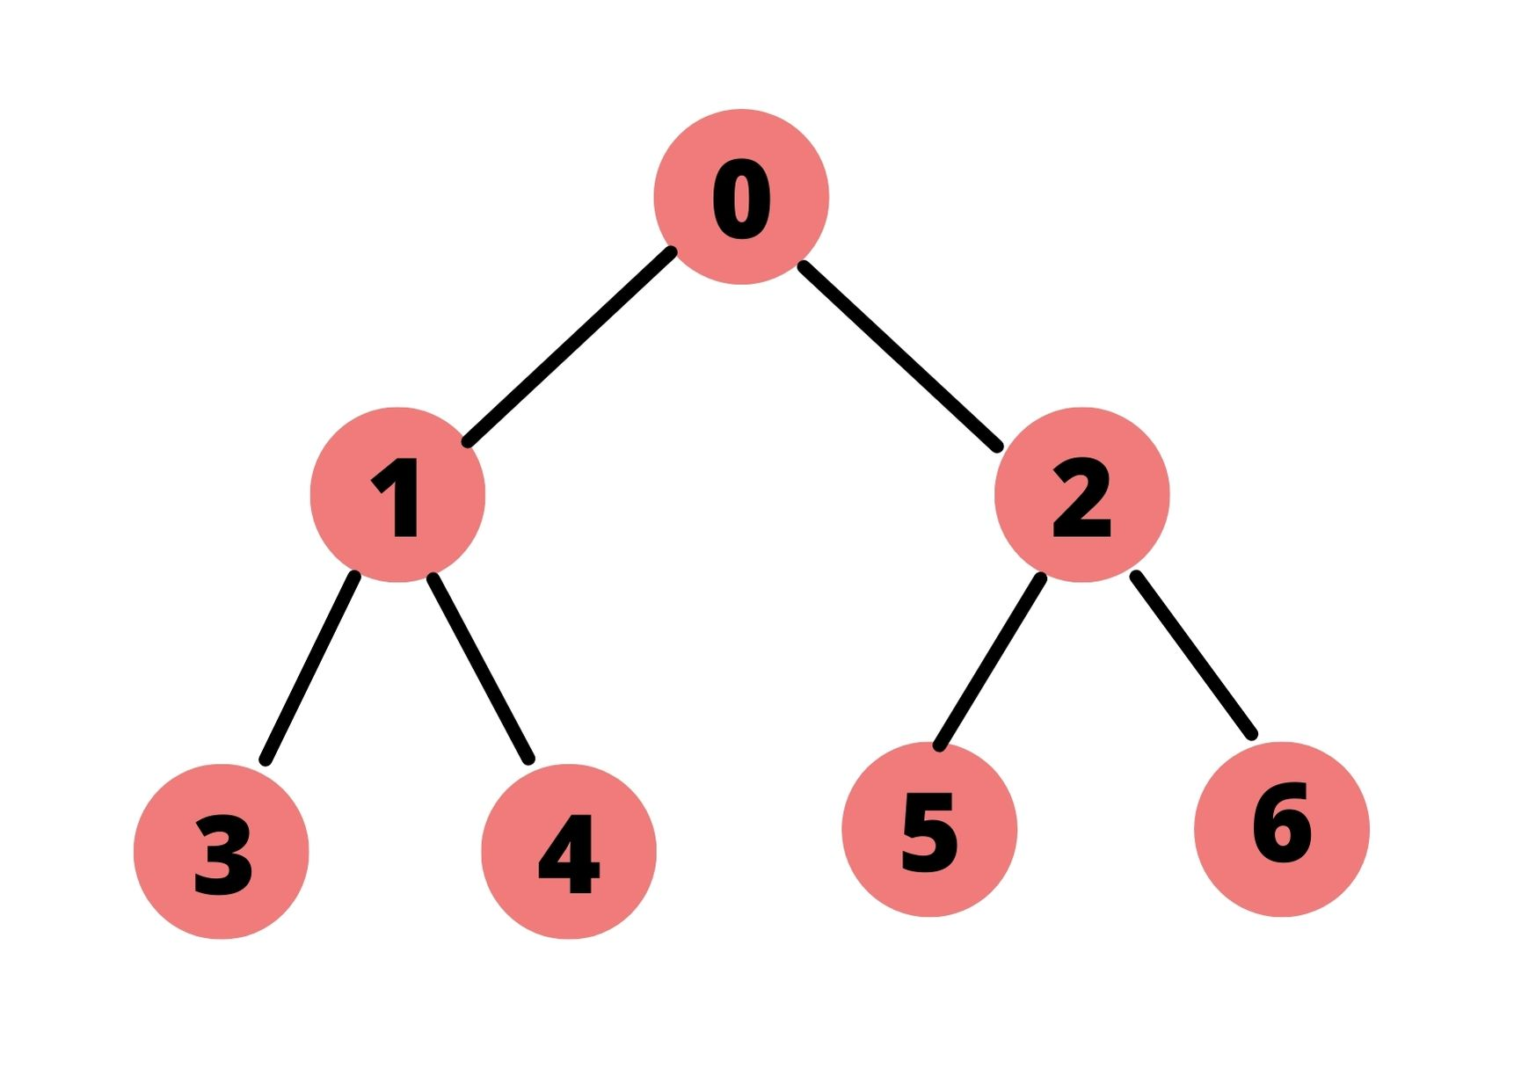 Level order. Рекурсивная функция для рисования дерева Пайтон.